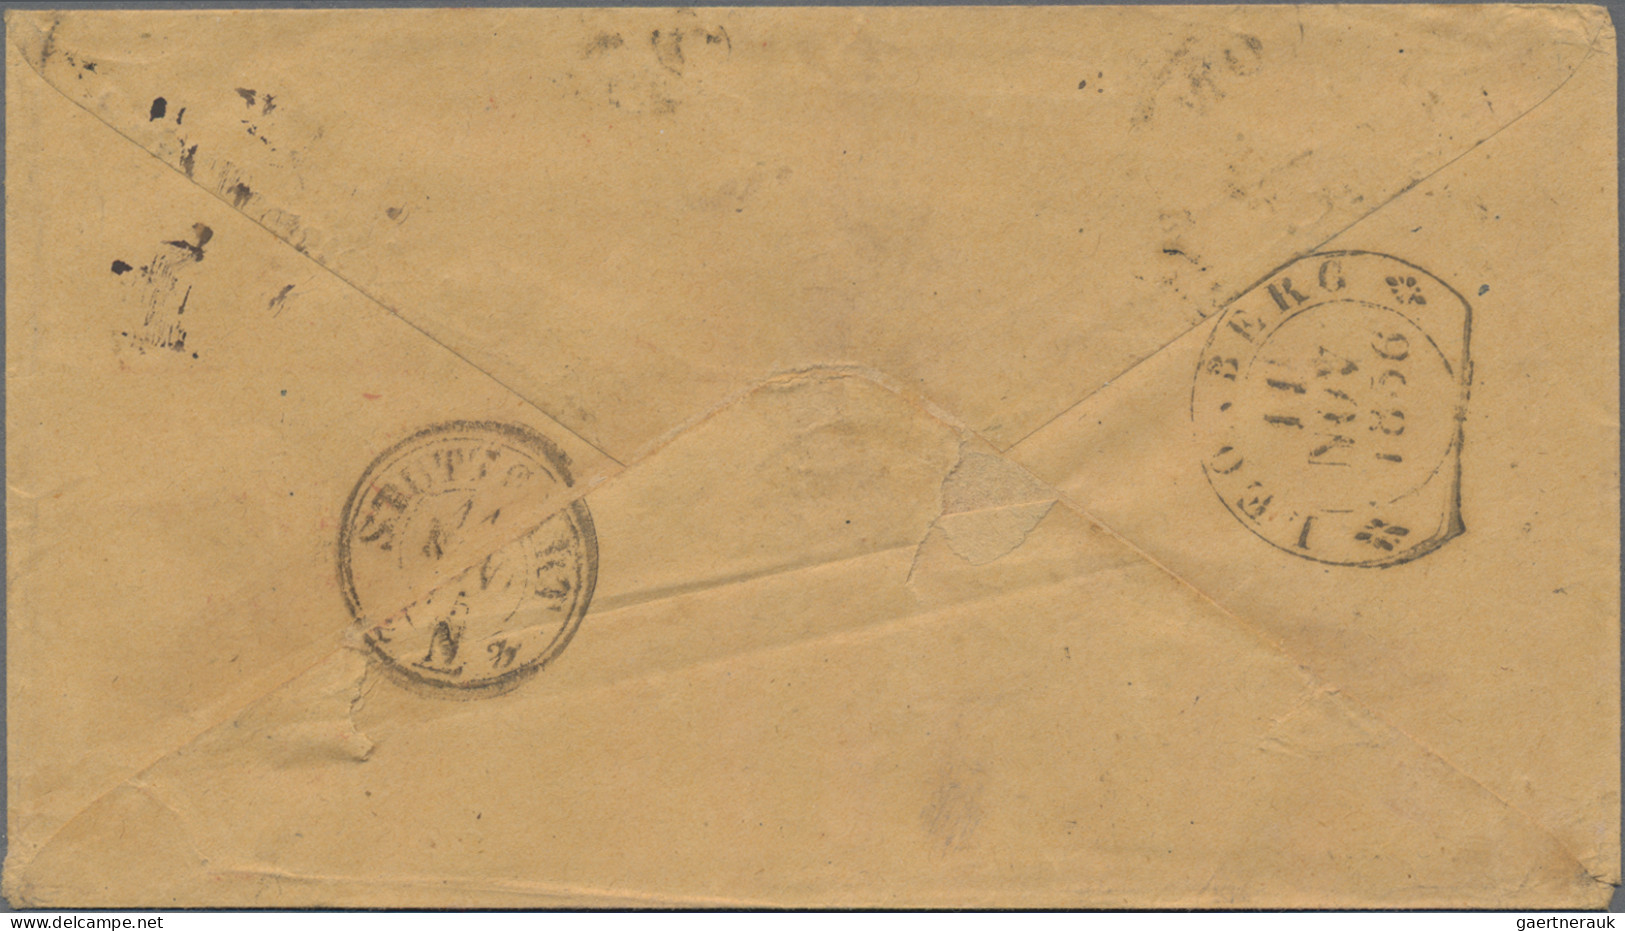 Preußen - Transitstempel: 1856/65, Auswandererpost, 3 Briefe aus USA mit rotem G